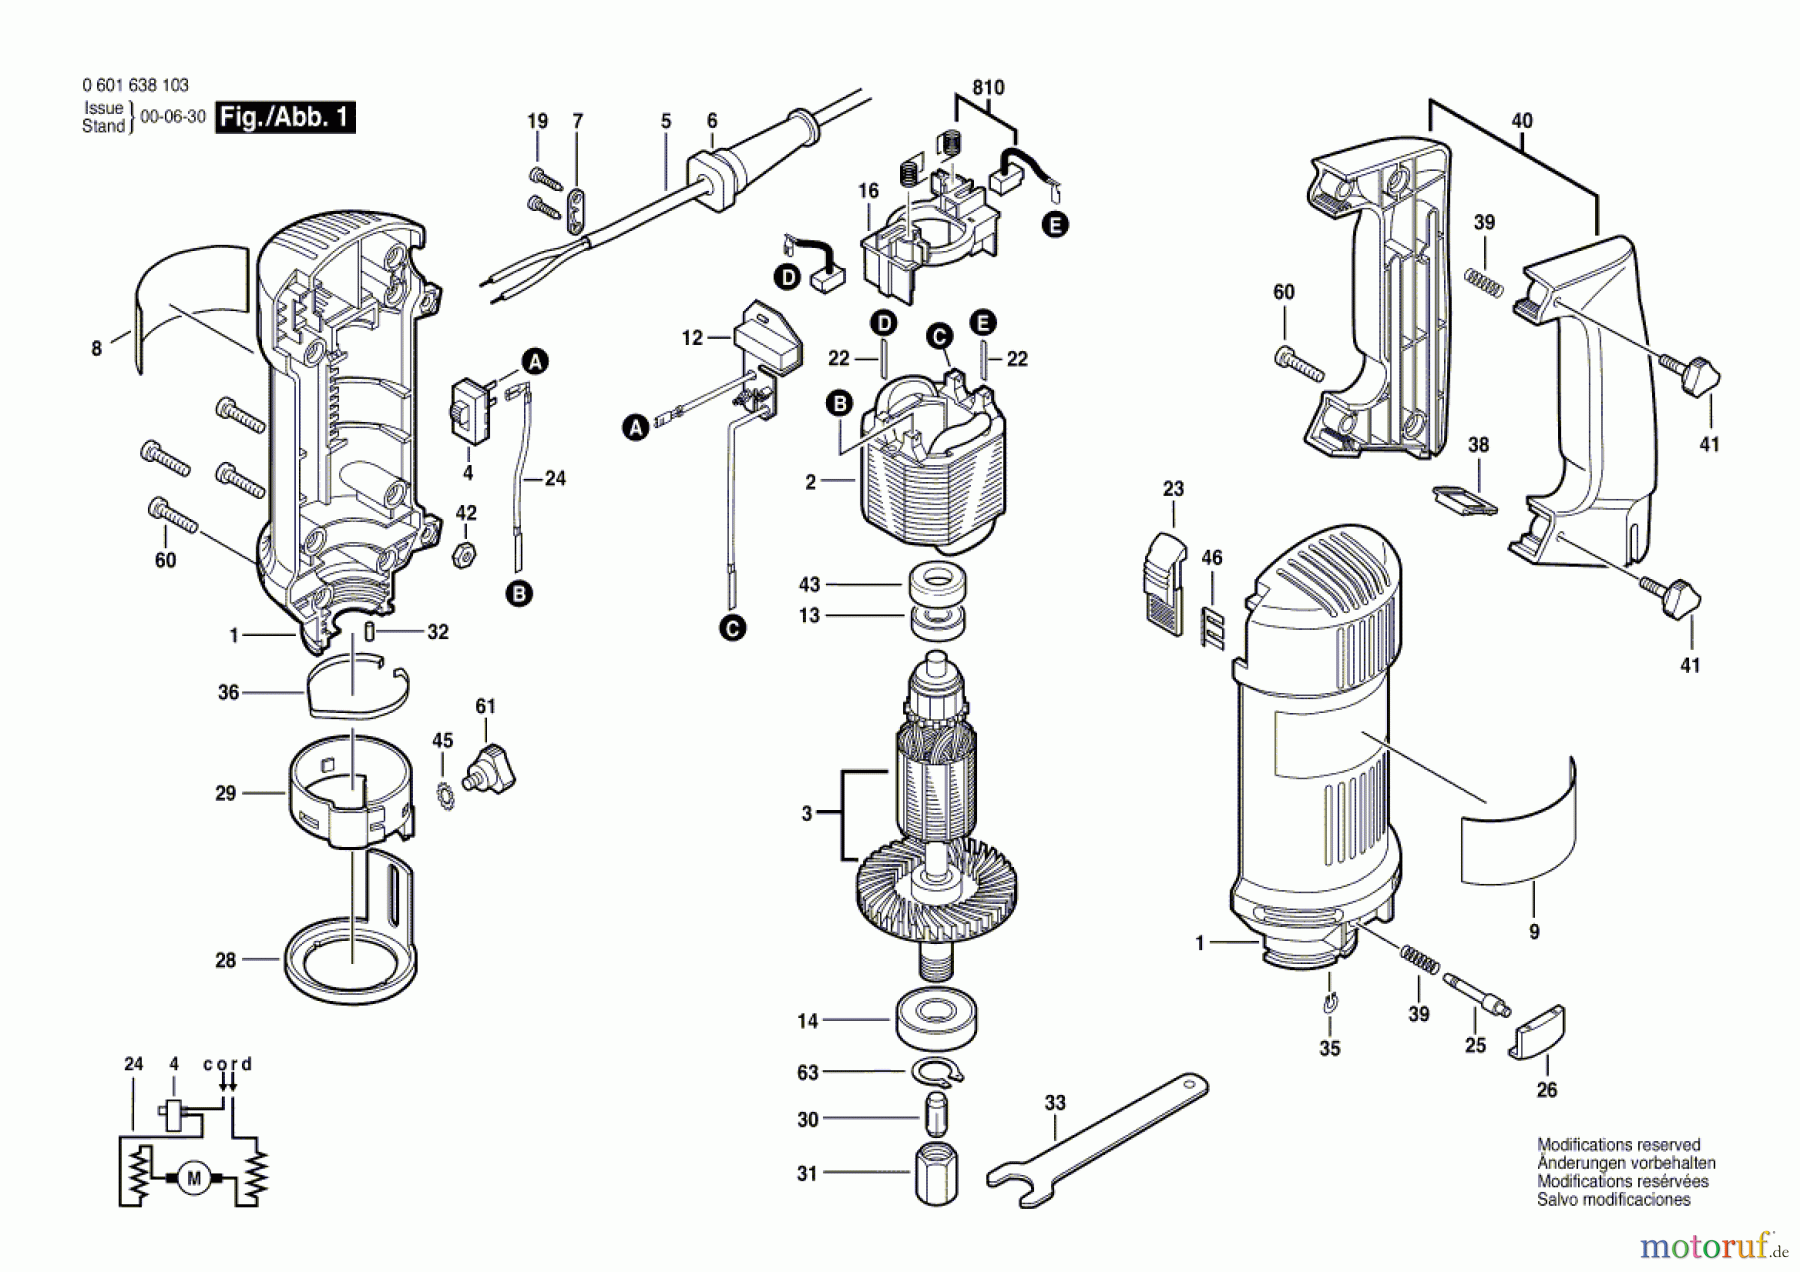  Bosch Werkzeug Rotationsschneider ROTOCUT Seite 1